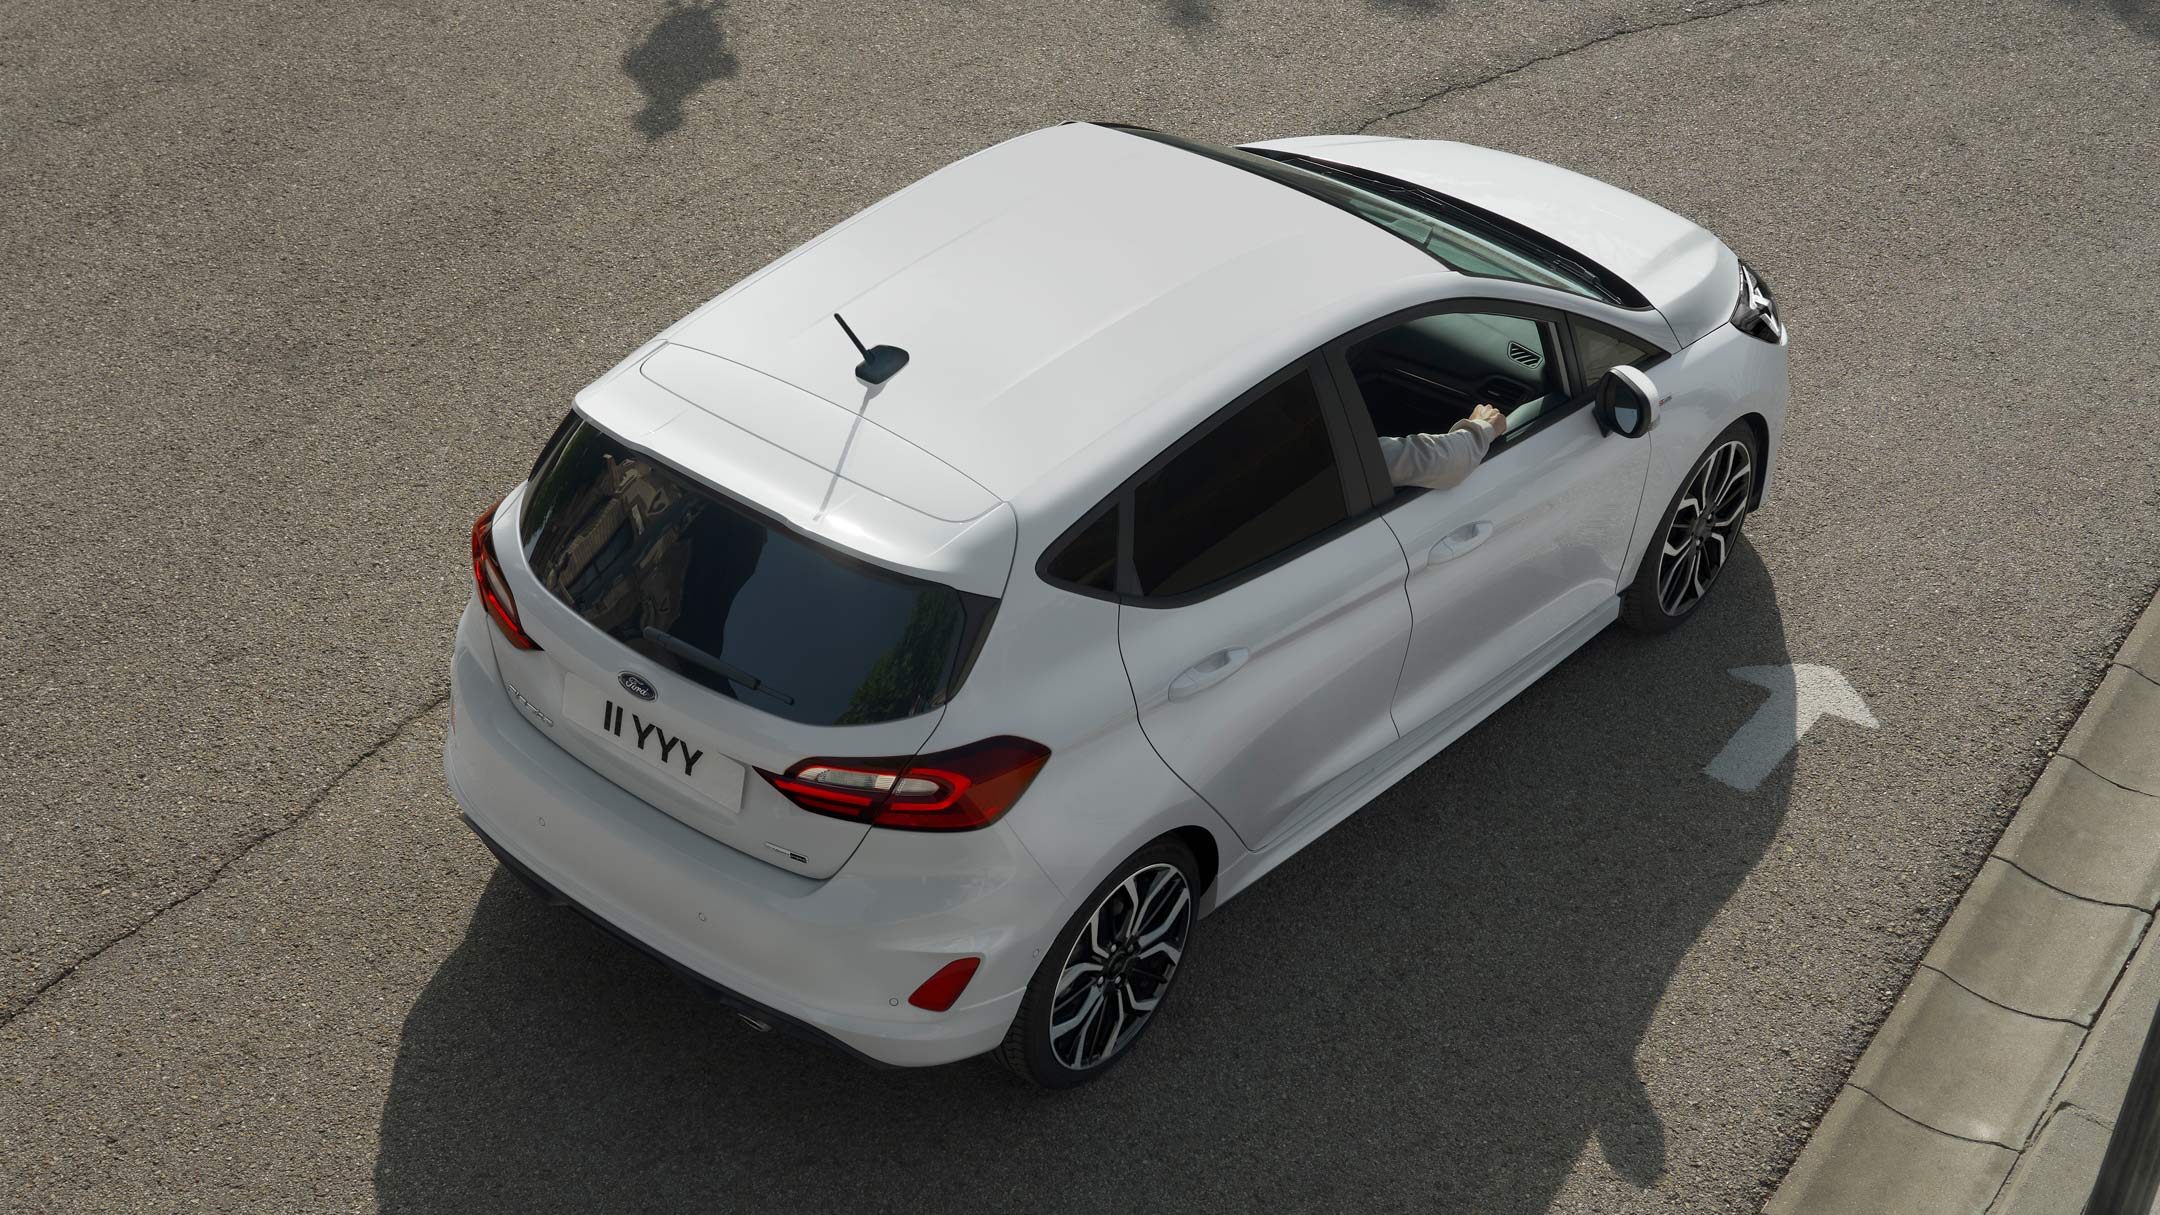 Ford Fiesta couleur blanche, vue arrière aux trois quarts d’en haut, roulant sur une route.